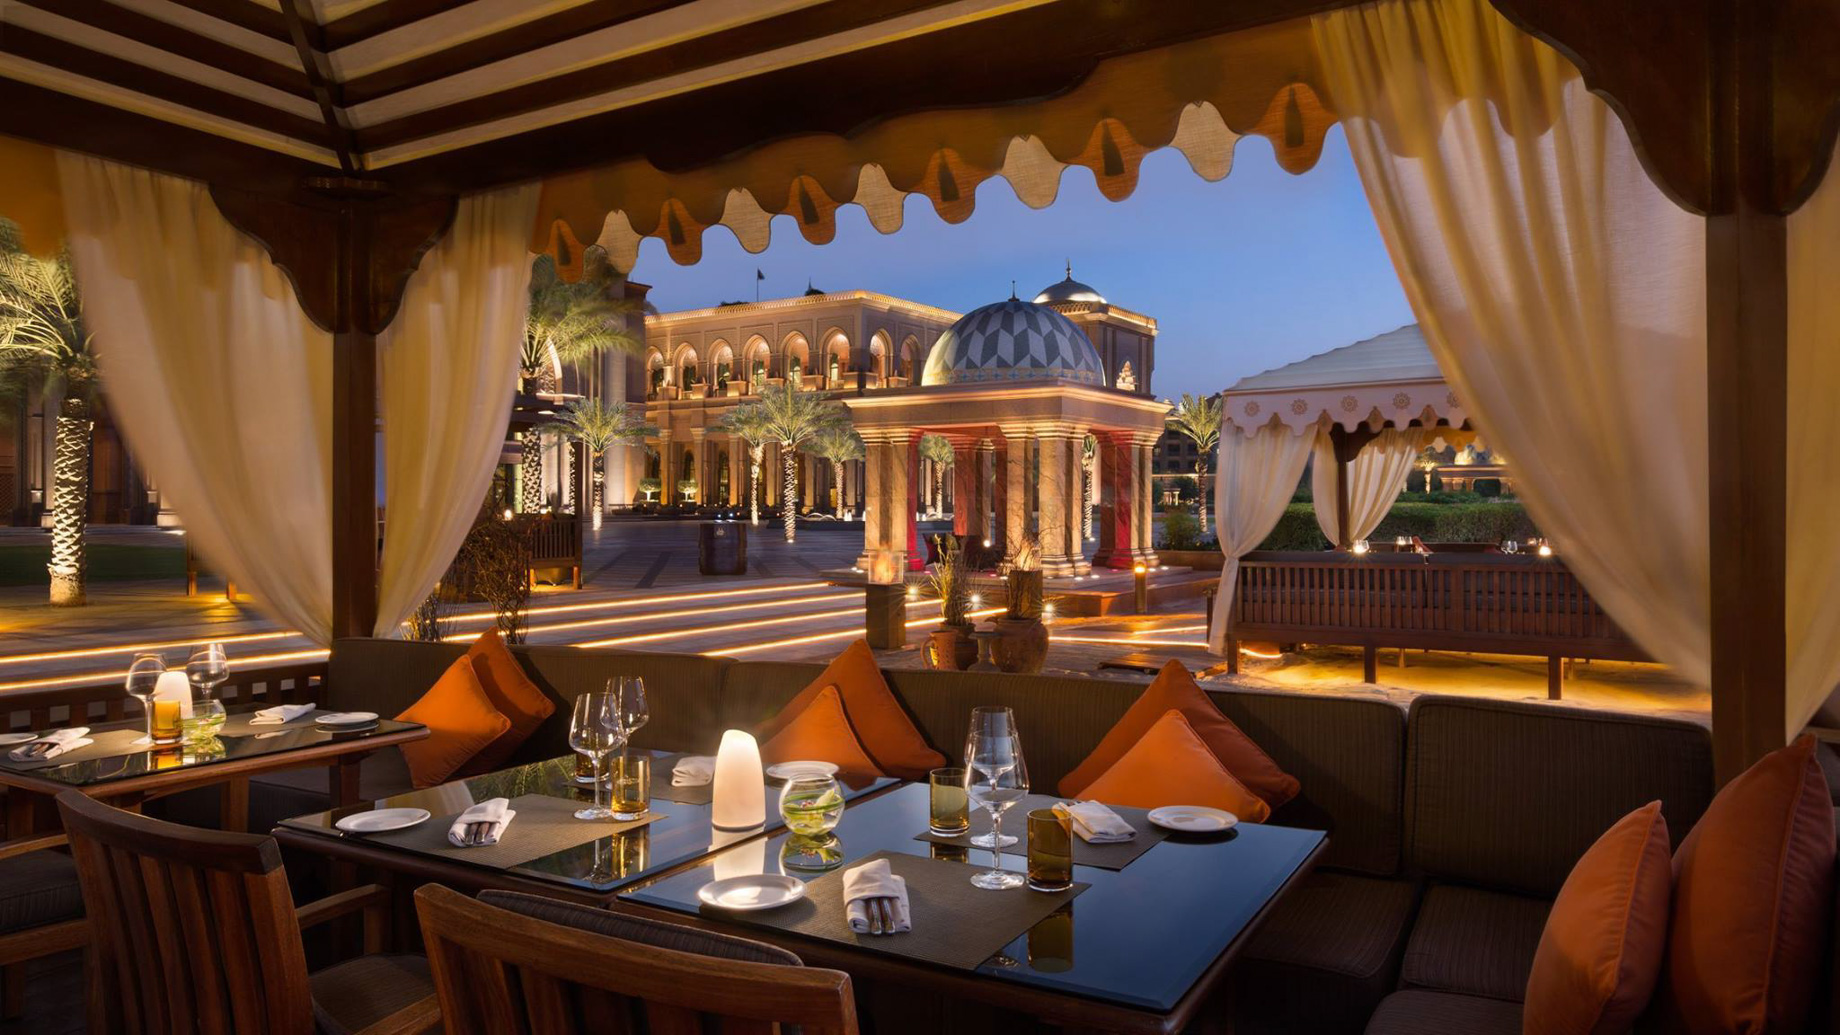 Emirates Palace Abu Dhabi Hotel – Abu Dhabi, UAE – Dining Cabana Palace Night View